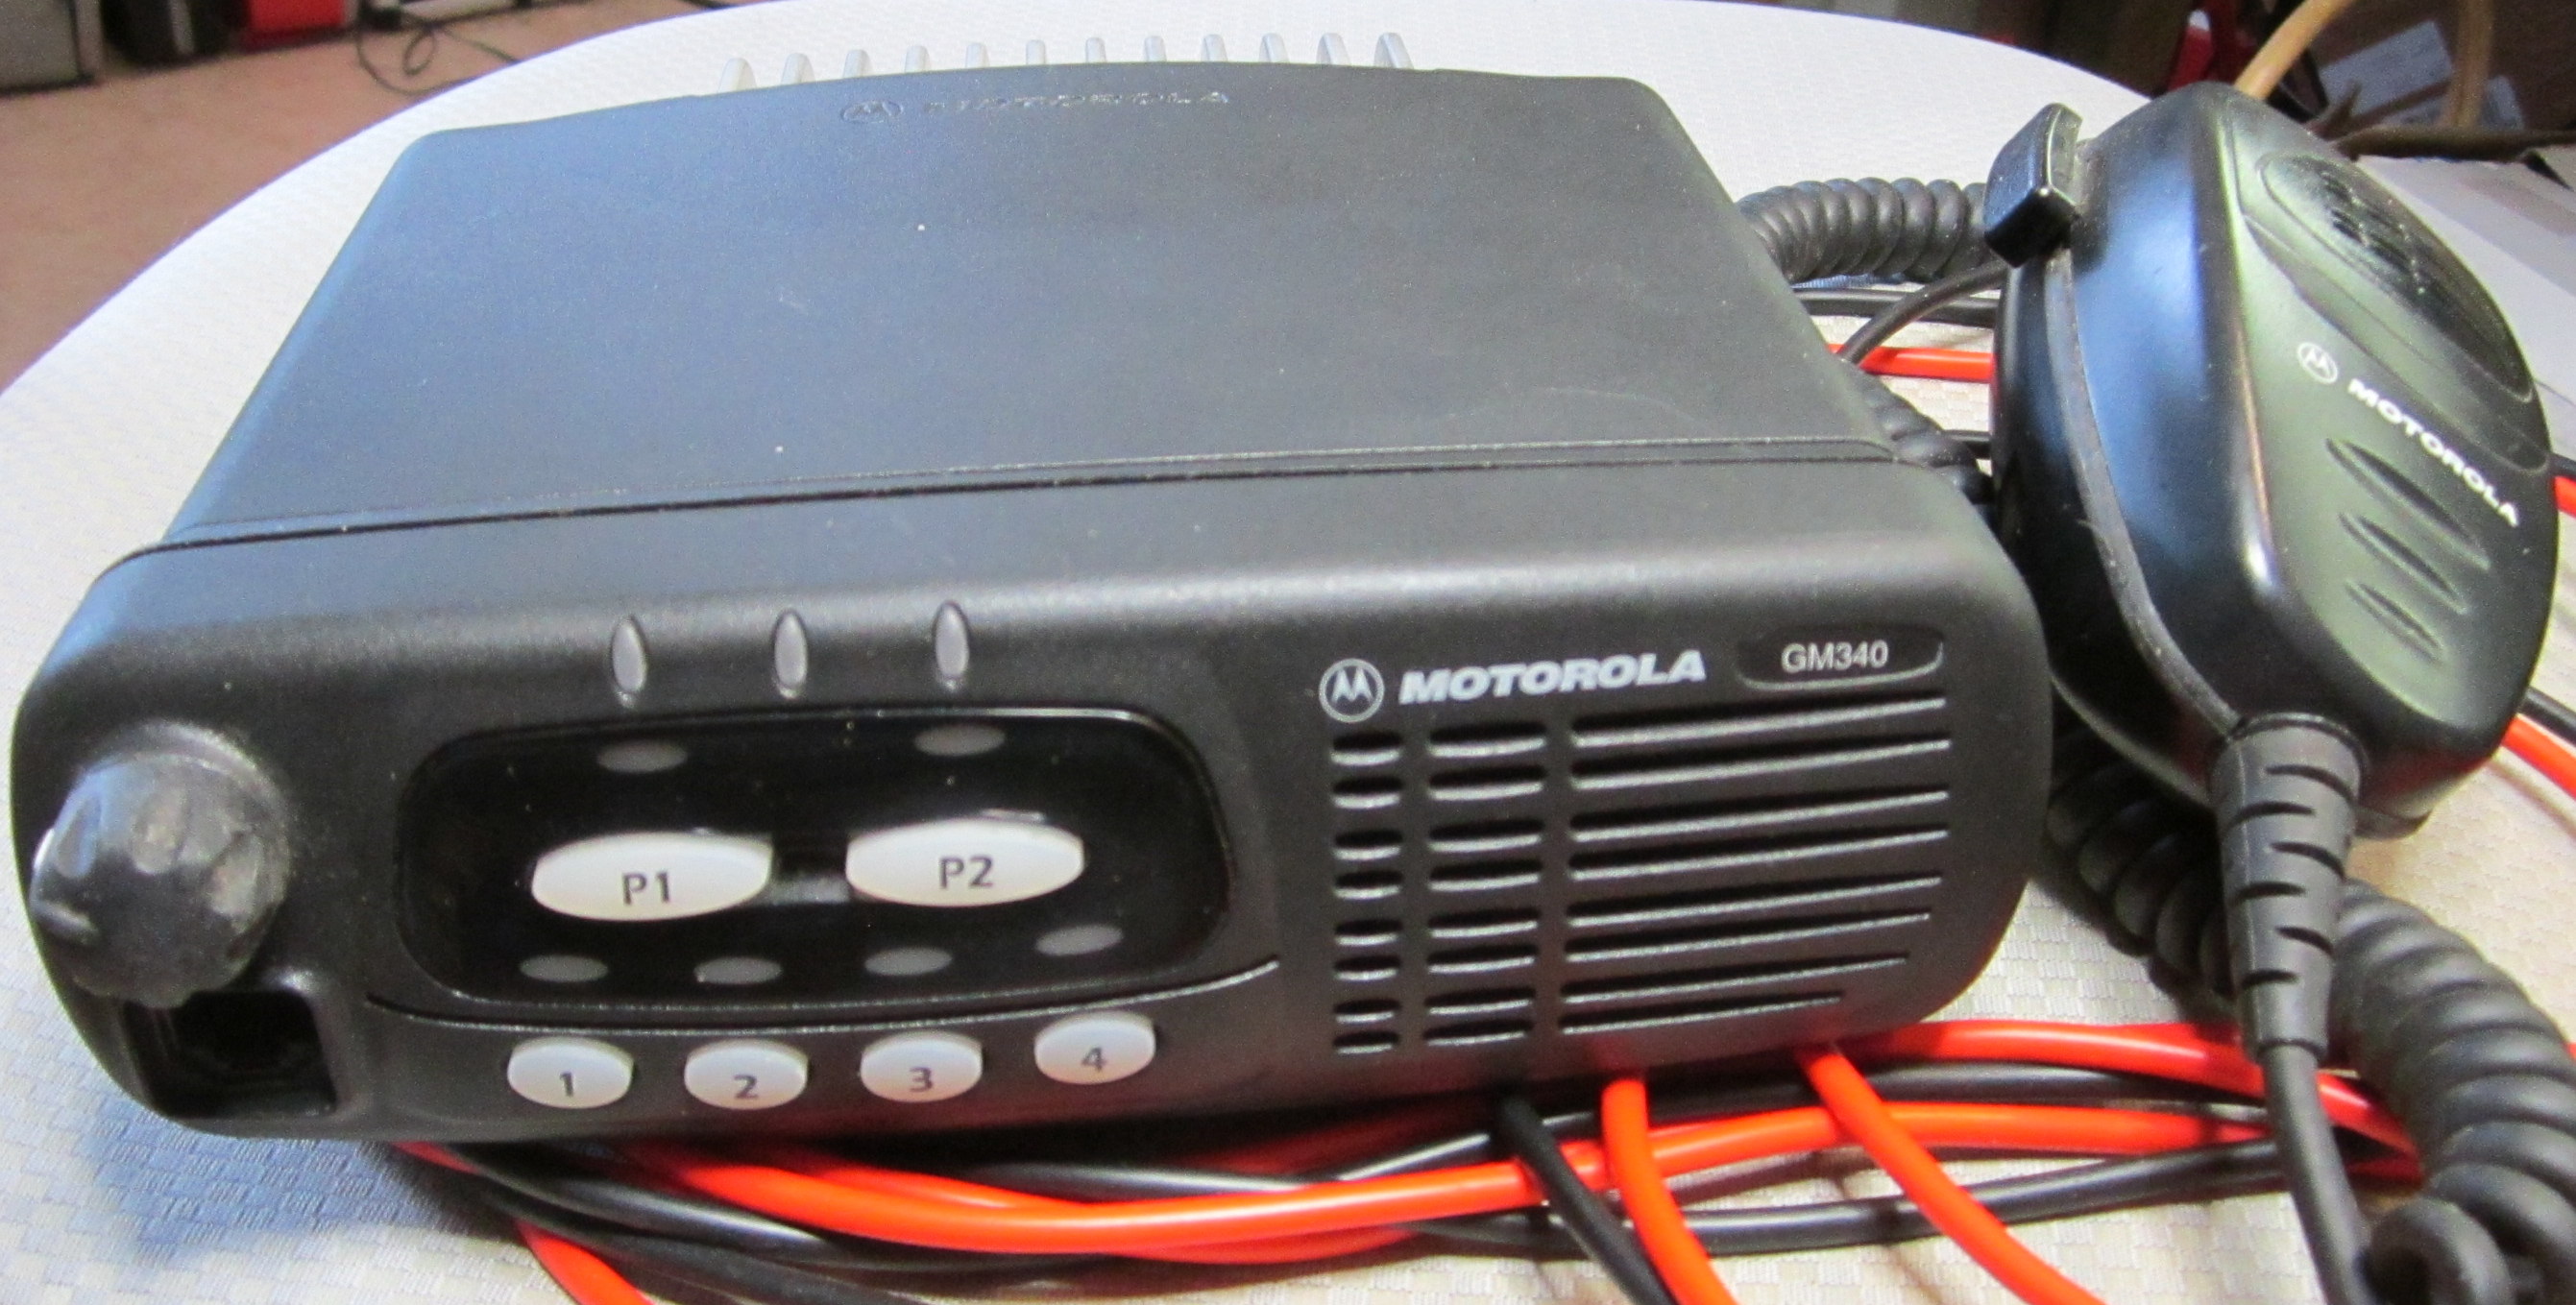 Motorola GM340 403-470MHz 4 kanavainen radiopuhelin ohjelmoituna